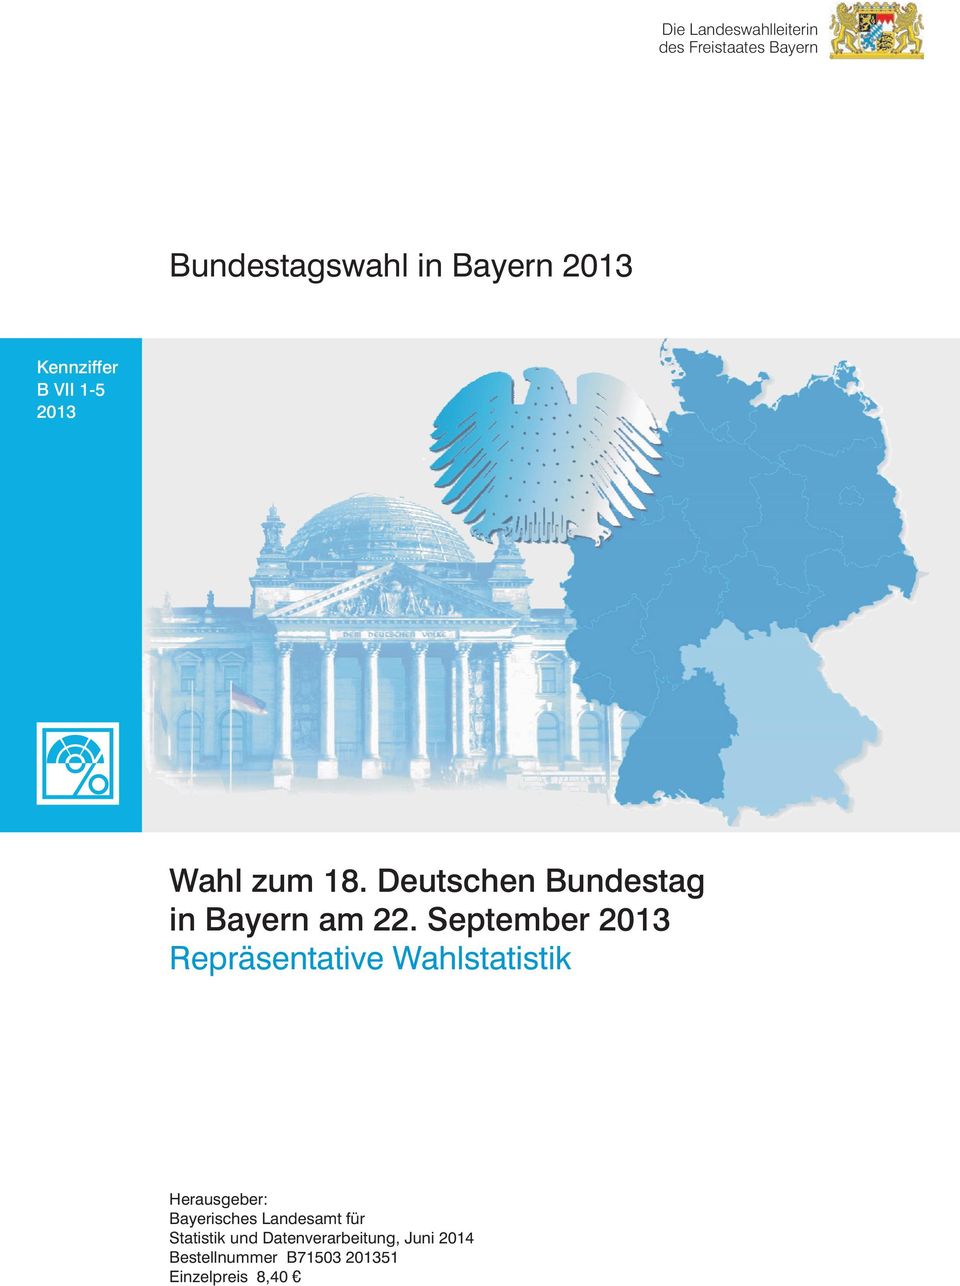 Bundestag in Bayern am 22 September 2013